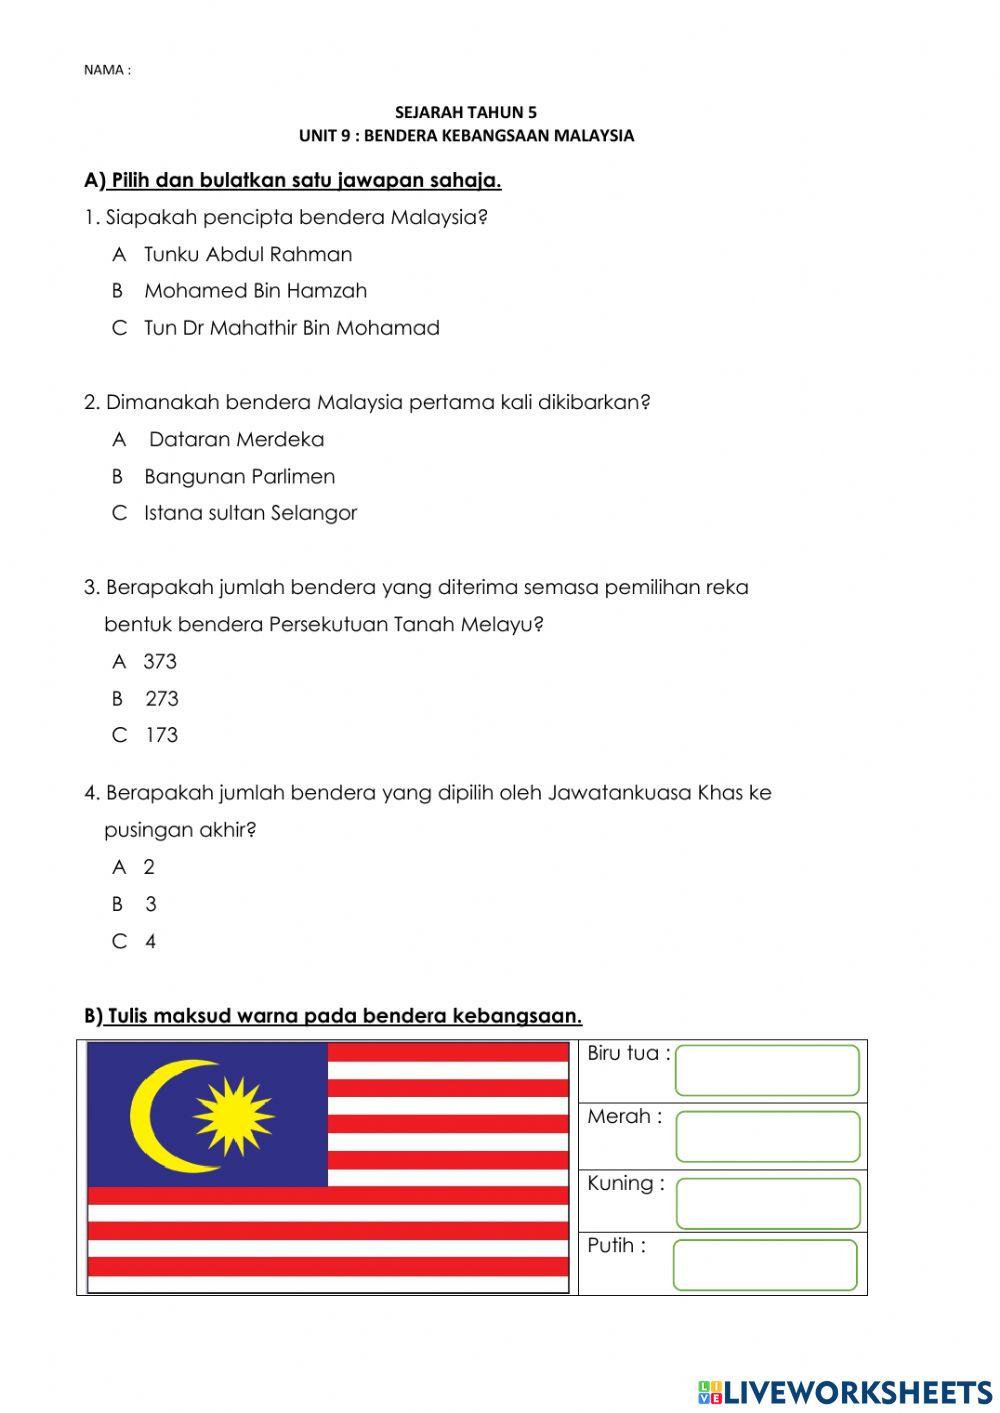 Kuiz bendera kebangsaan Malaysia